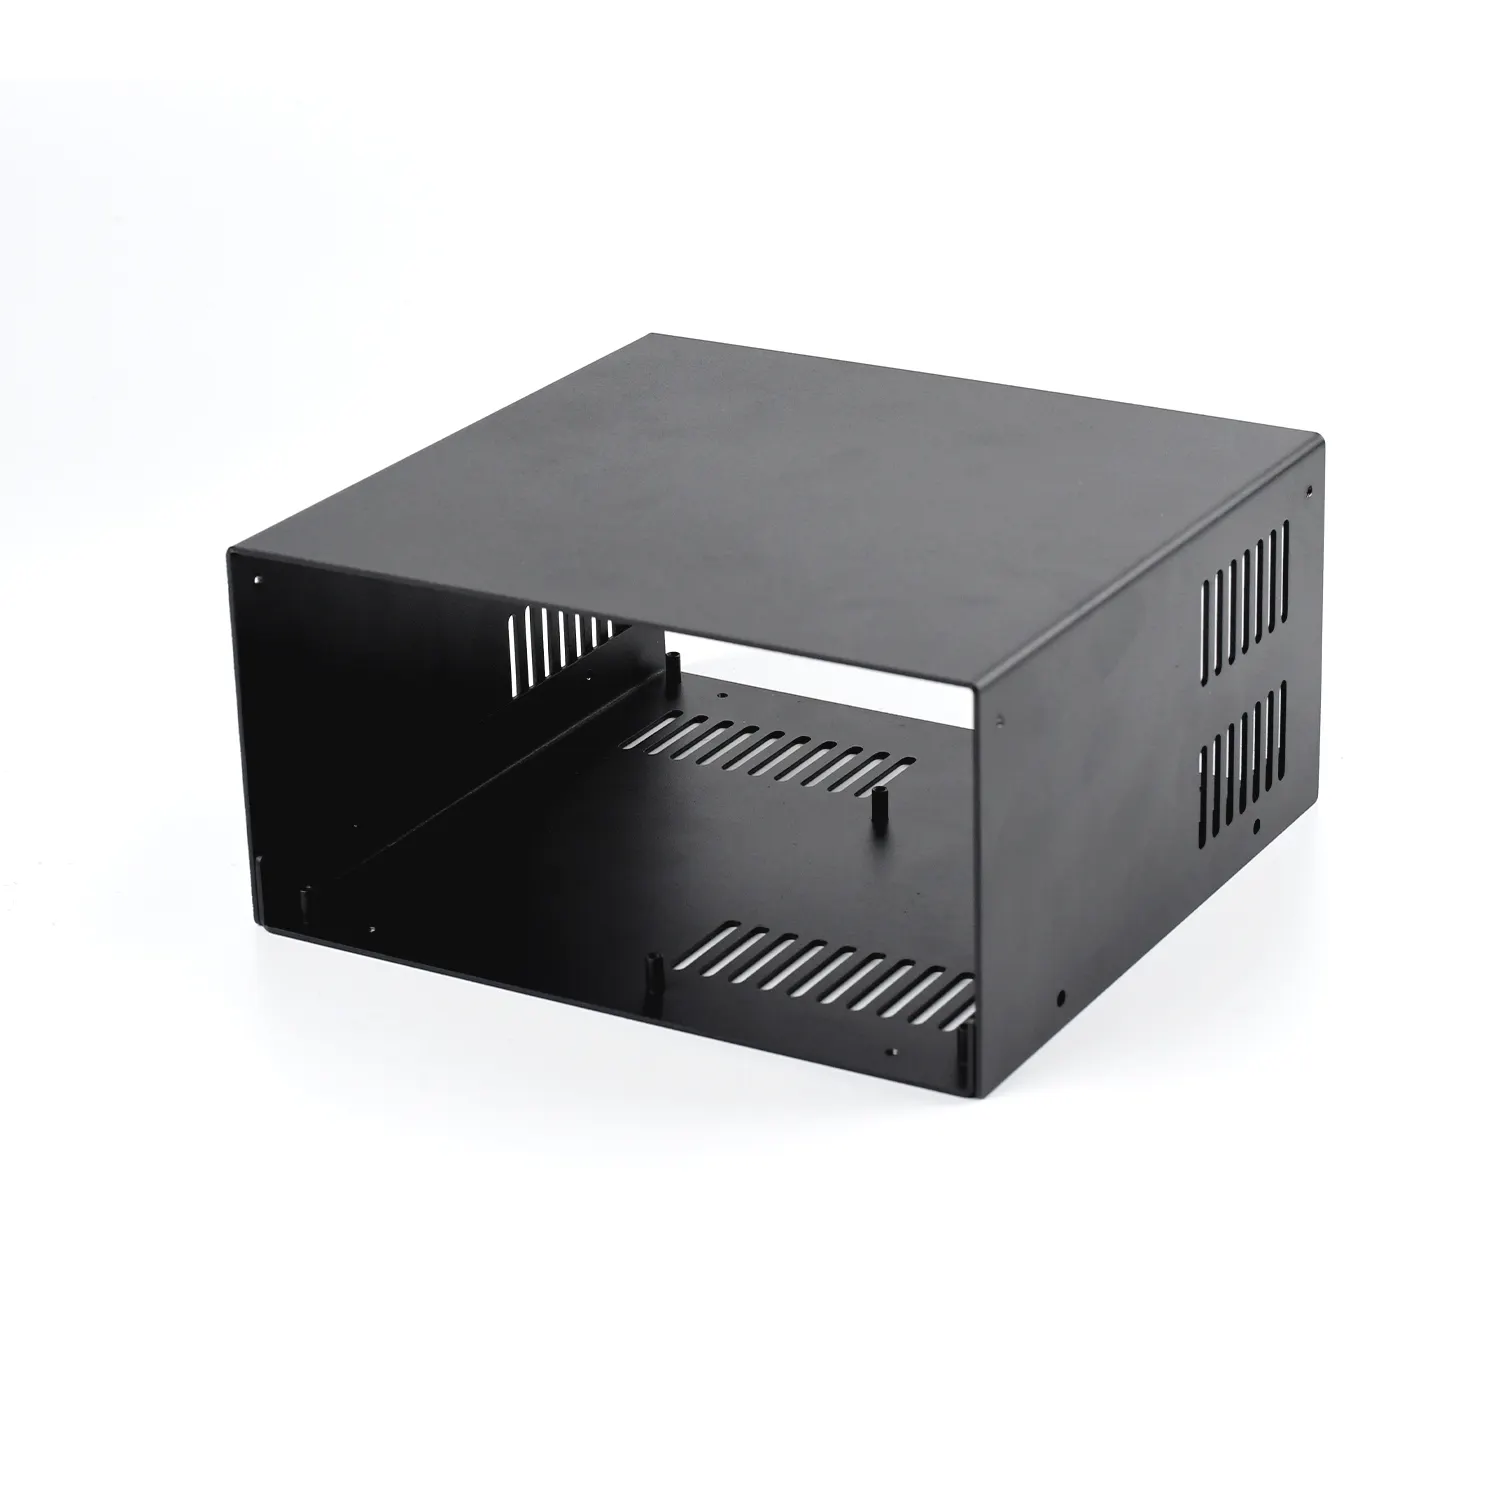 Benutzer definiertes Aluminium gehäuse Gehäuse OEM Rack Mount Blech Server Chassis Gehäuse für Batterie kasten Custom ized